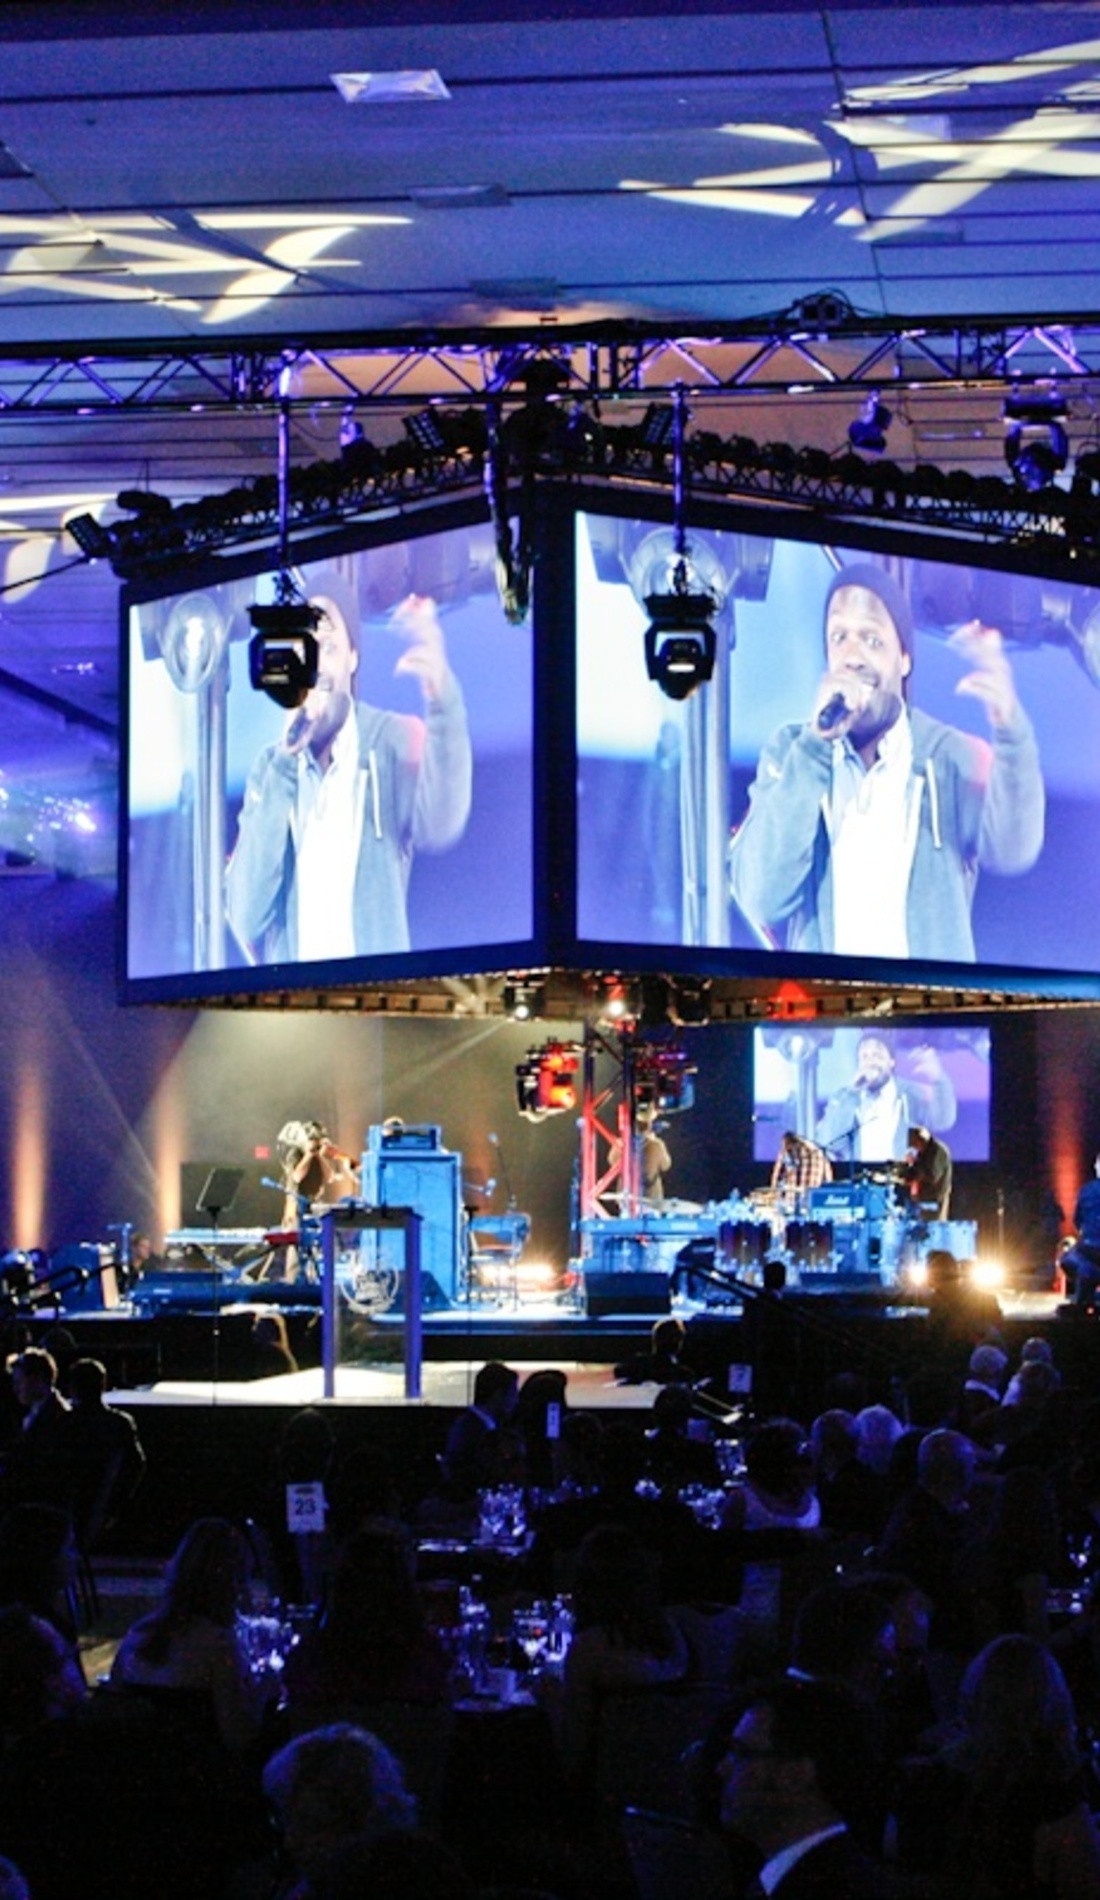 A Juno Awards live event